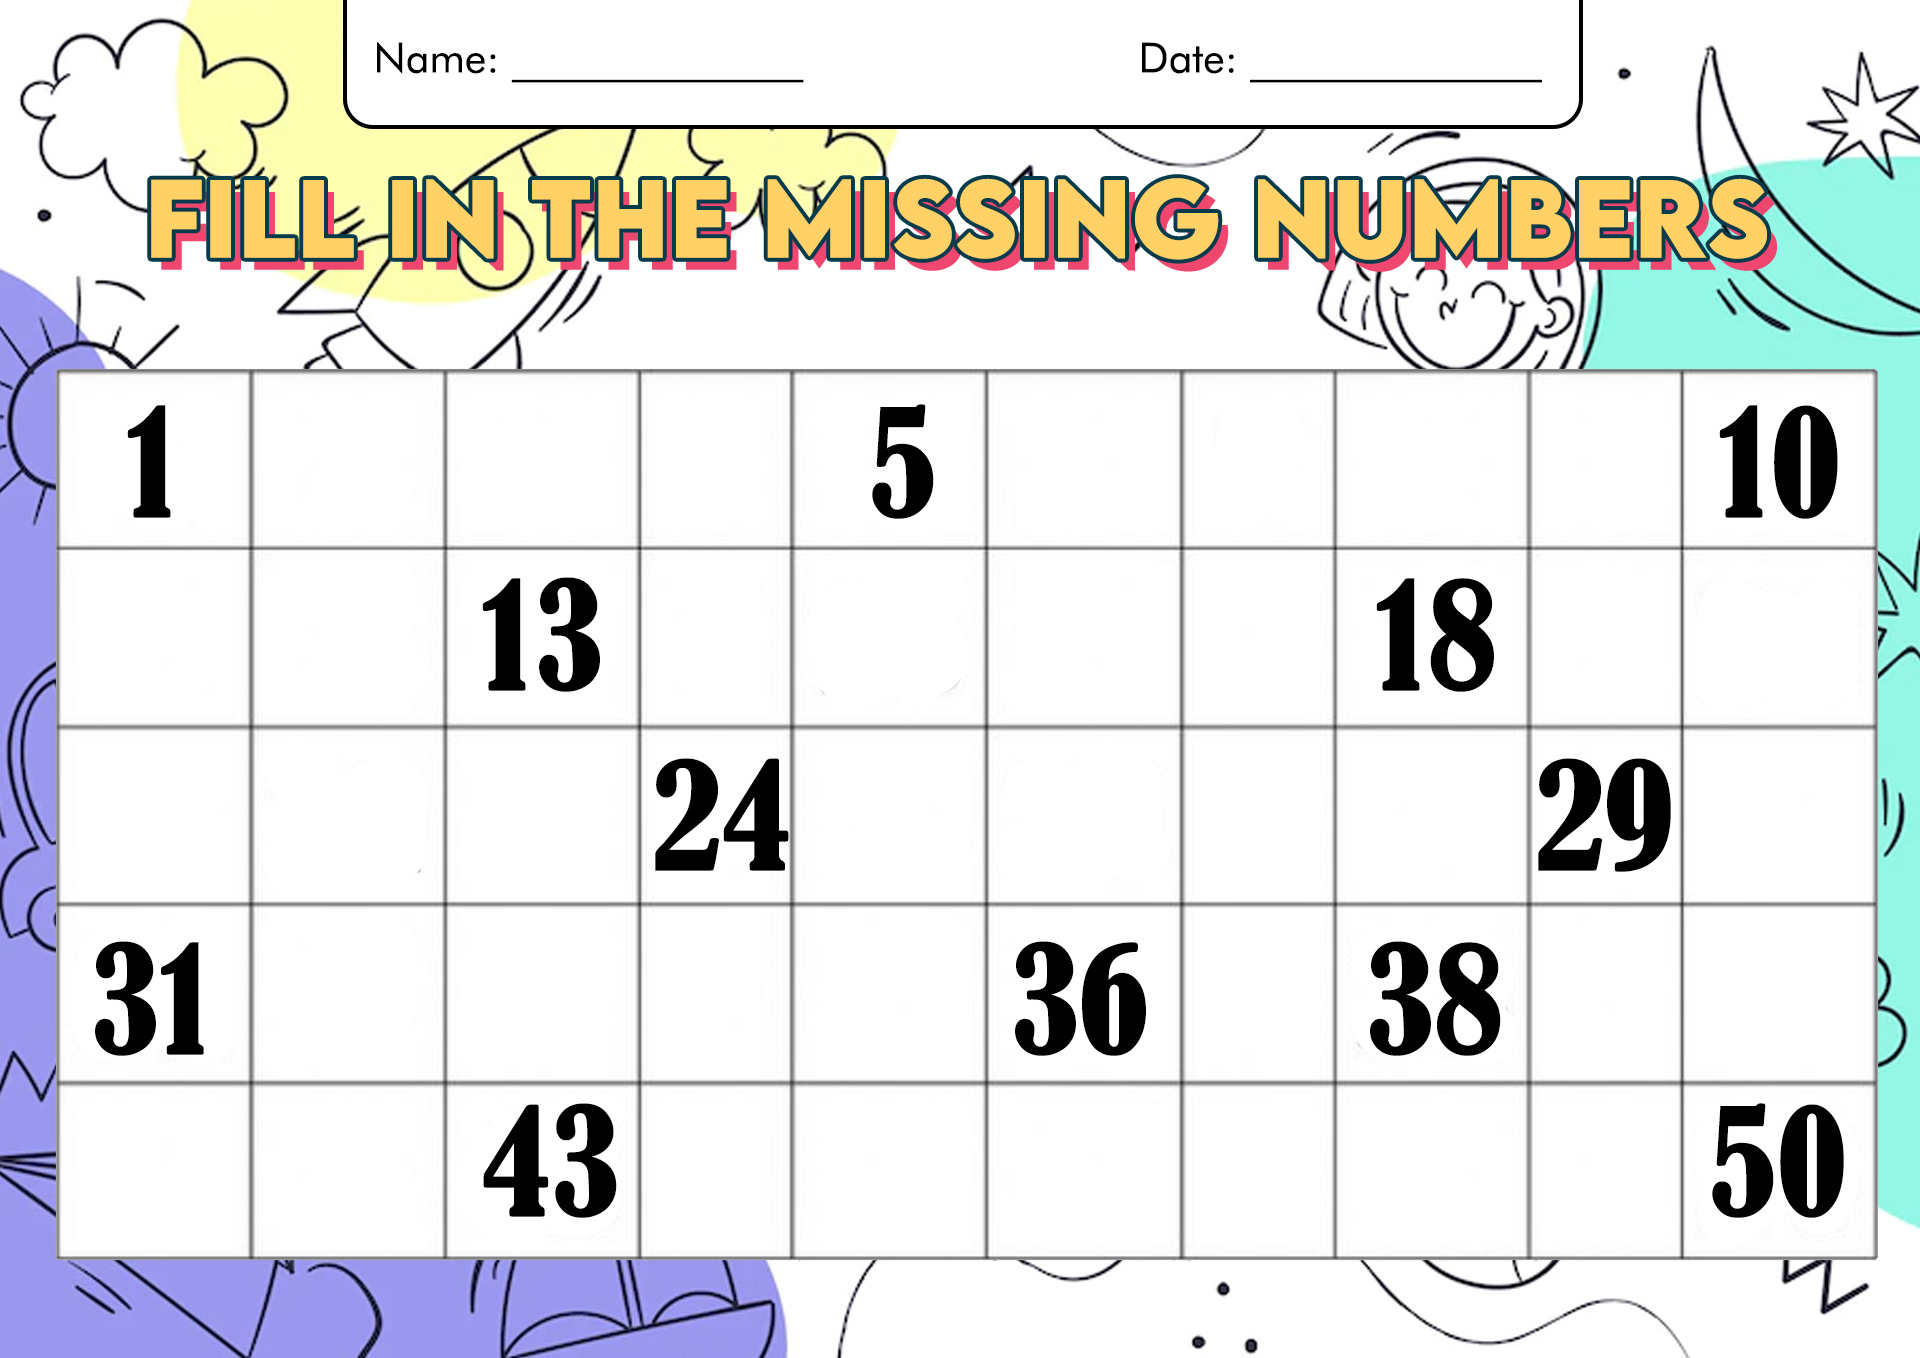 12-best-images-of-kindergarten-number-worksheets-1-50-missing-numbers-1-50-worksheet-trace